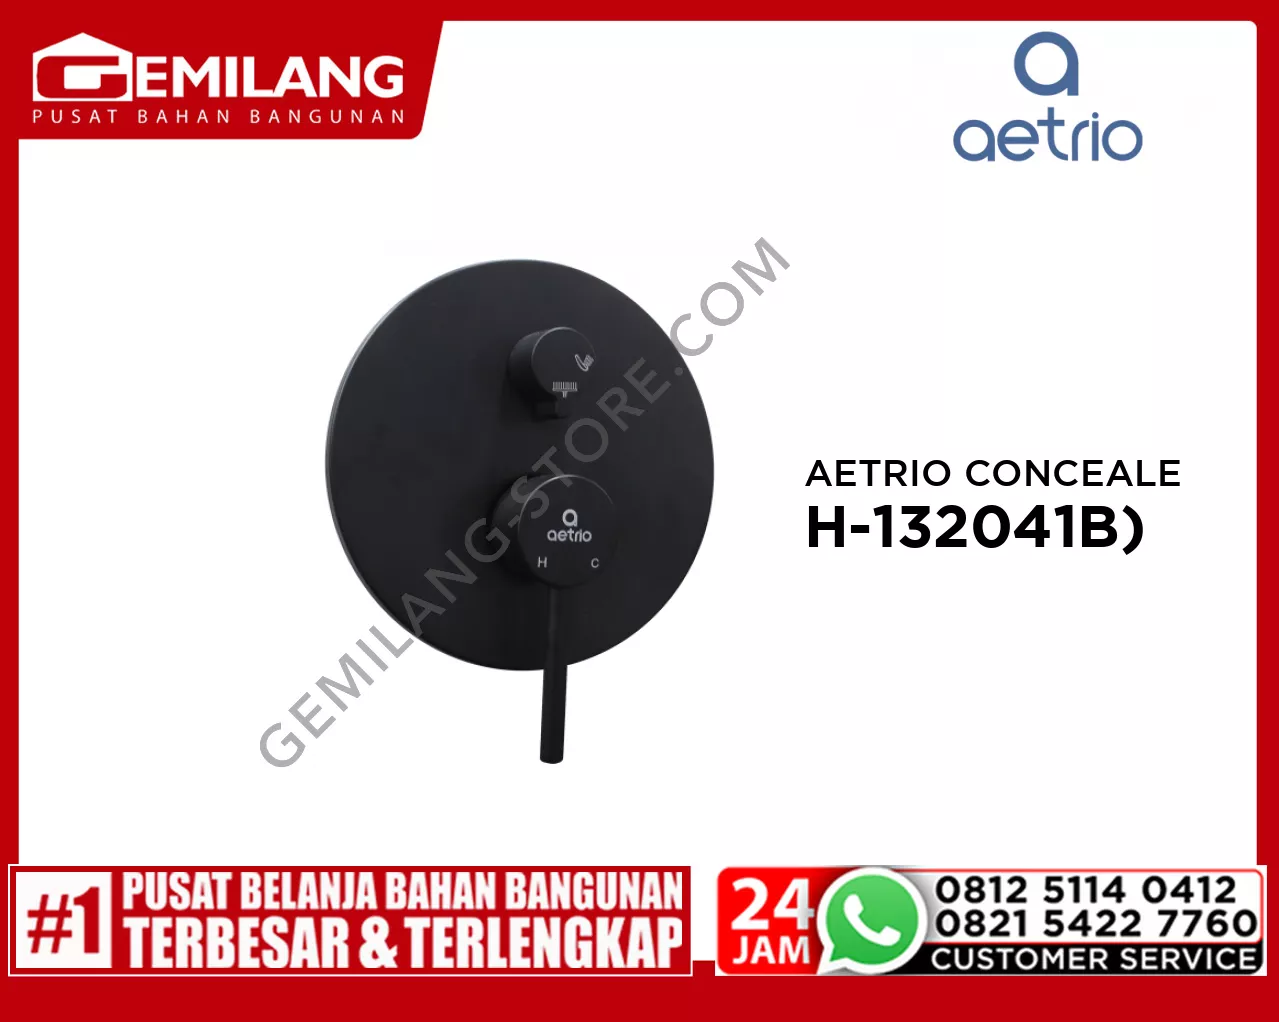 AETRIO CONCEALED SHOWER MIXER SET (HD-132041B,MX-132041B,SH-132041B)